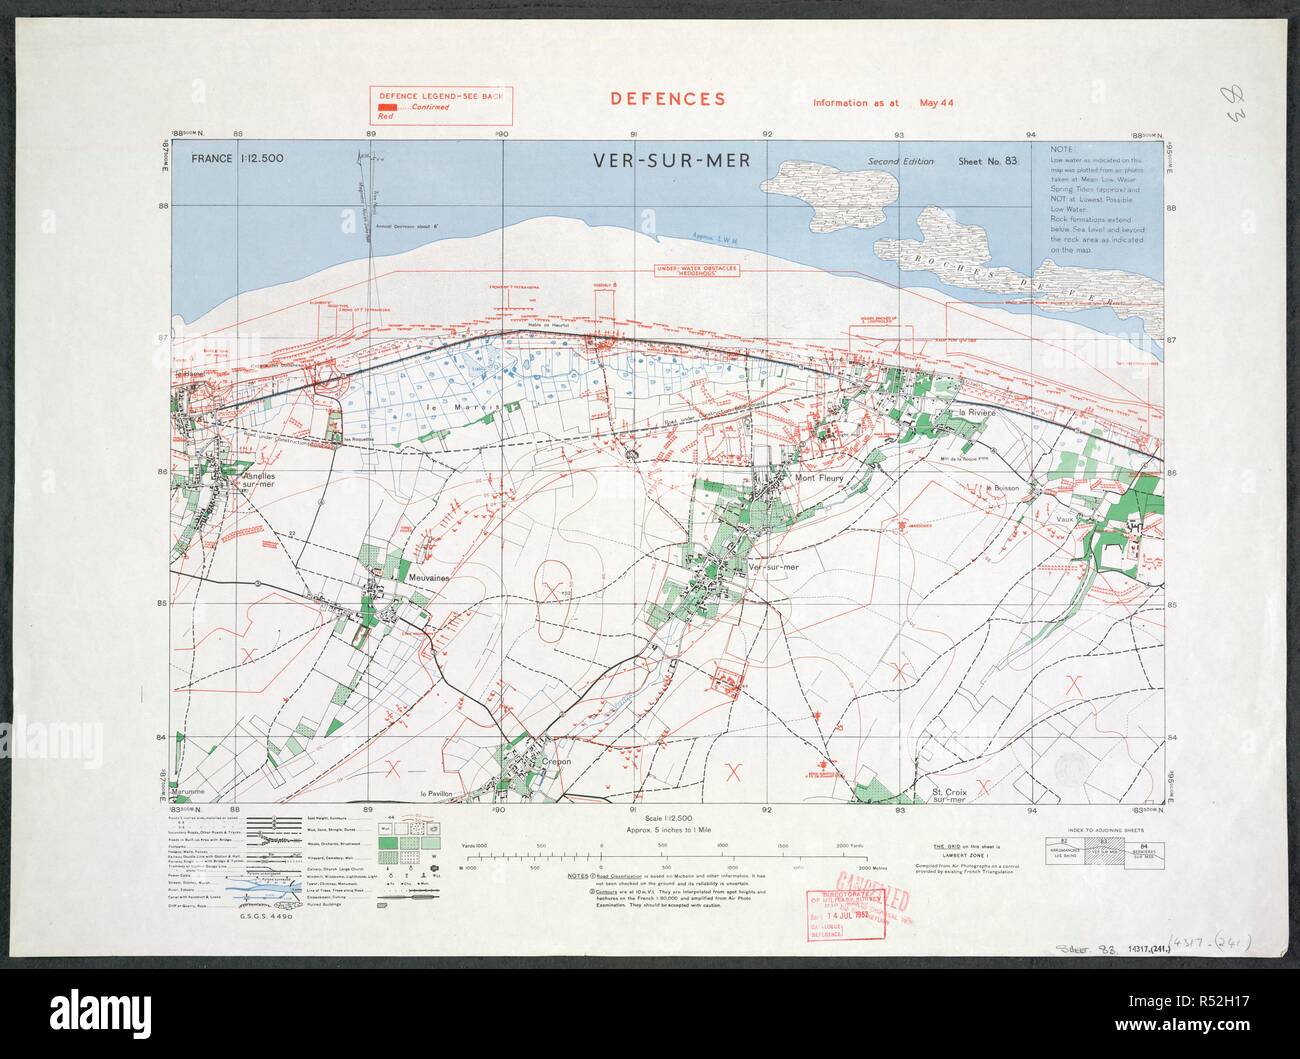 Ver-Sur-mer, sulla costa francese. "Spiaggia d'Oro". Una mappa della Seconda Guerra Mondiale. Il 6 giugno 1944, D-Day, il British cinquantesimo divisione di fanteria sbarcati a ver-sur-Mer, nel "spiaggia d'Oro" del settore. Francia 12.500 difese informazioni come a maggio 1944. [Londra] : Ufficio di guerra, 1944. Mostra lo sbarco in Normandia costa. Informazioni difesa sovrastampati in blu su GSGS 4490. Fonte: Mappe 14317.(241) 83. Foto Stock